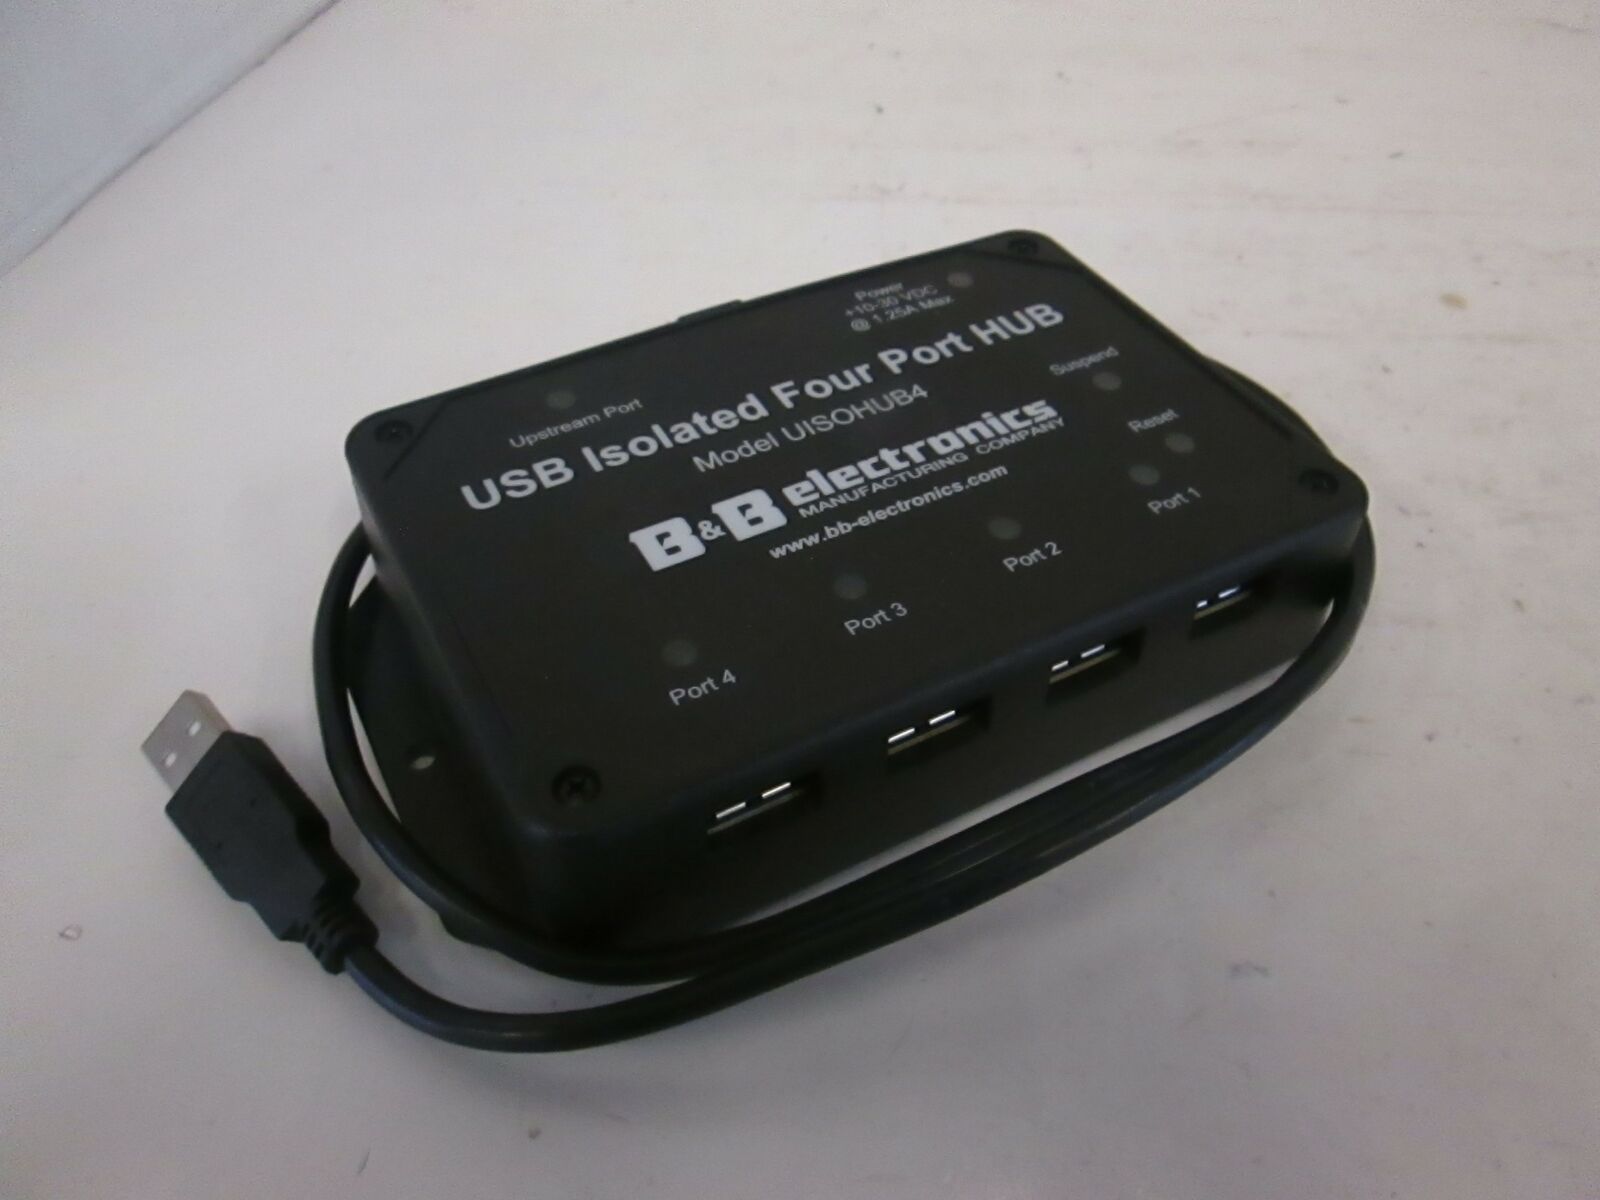 B&B Electronics, USB Isolated Four Port Hub, UISOHUB4, Used